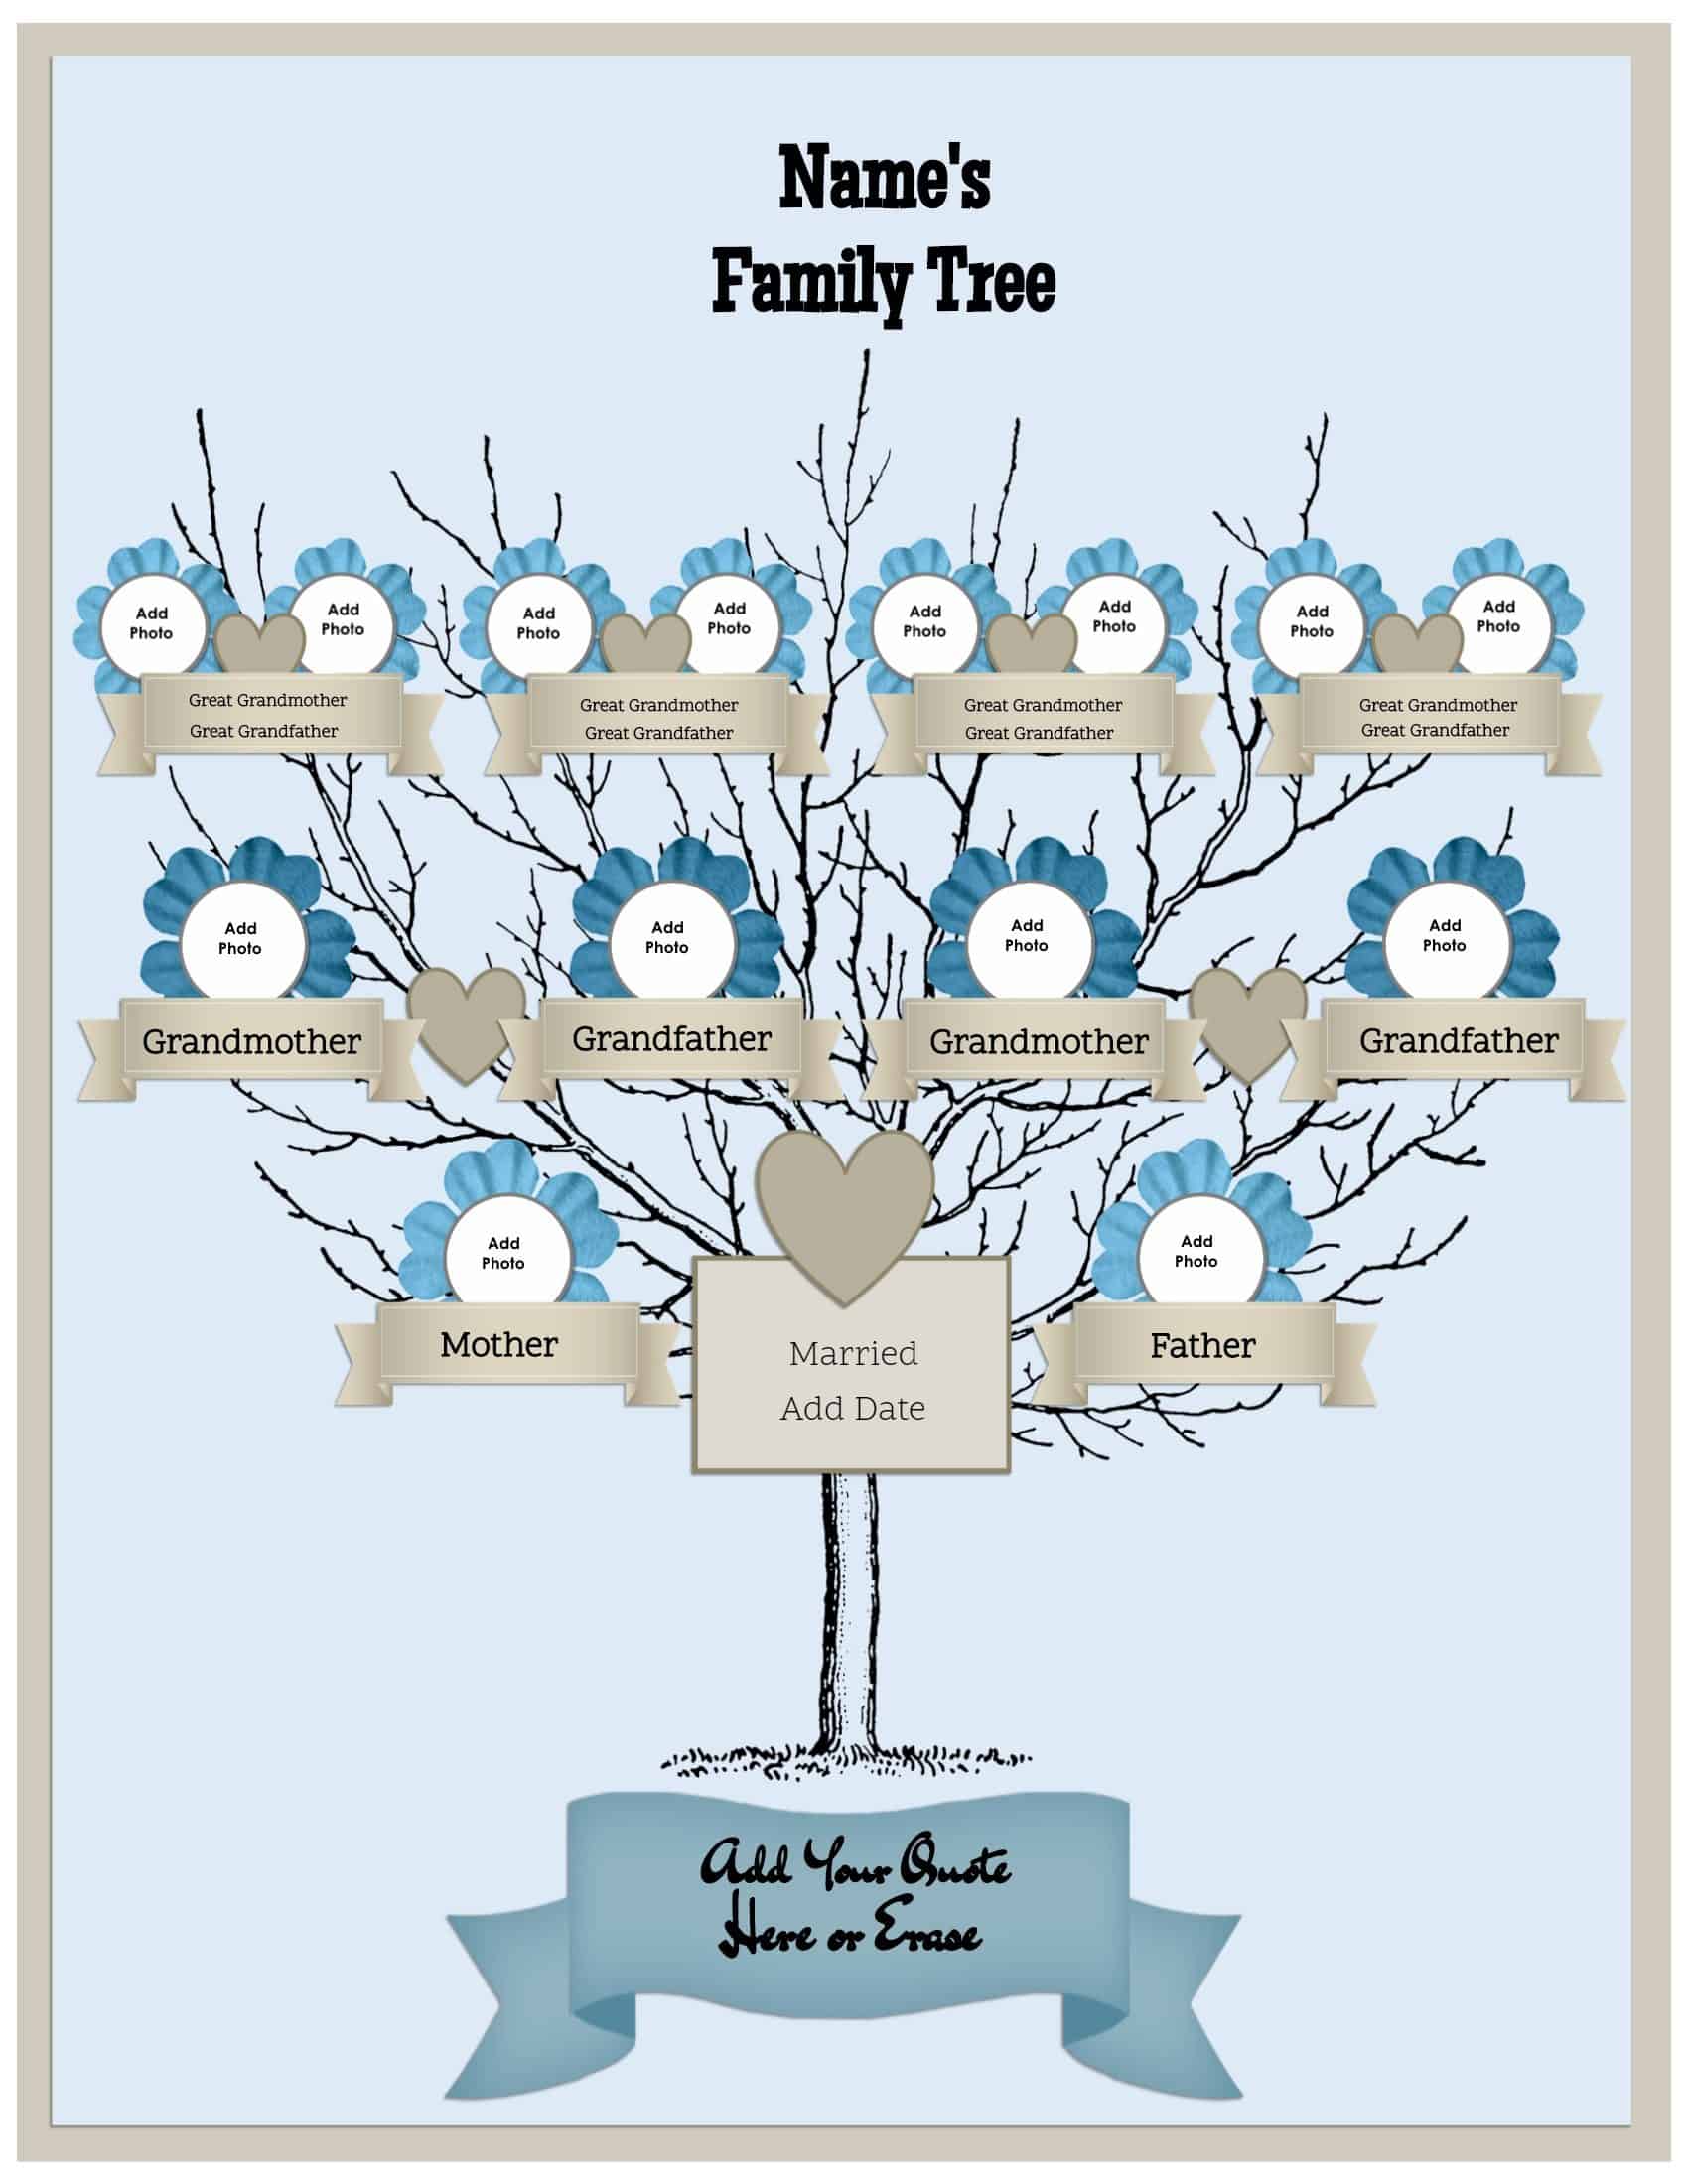 ancestry-family-tree-builder-magazinespastor